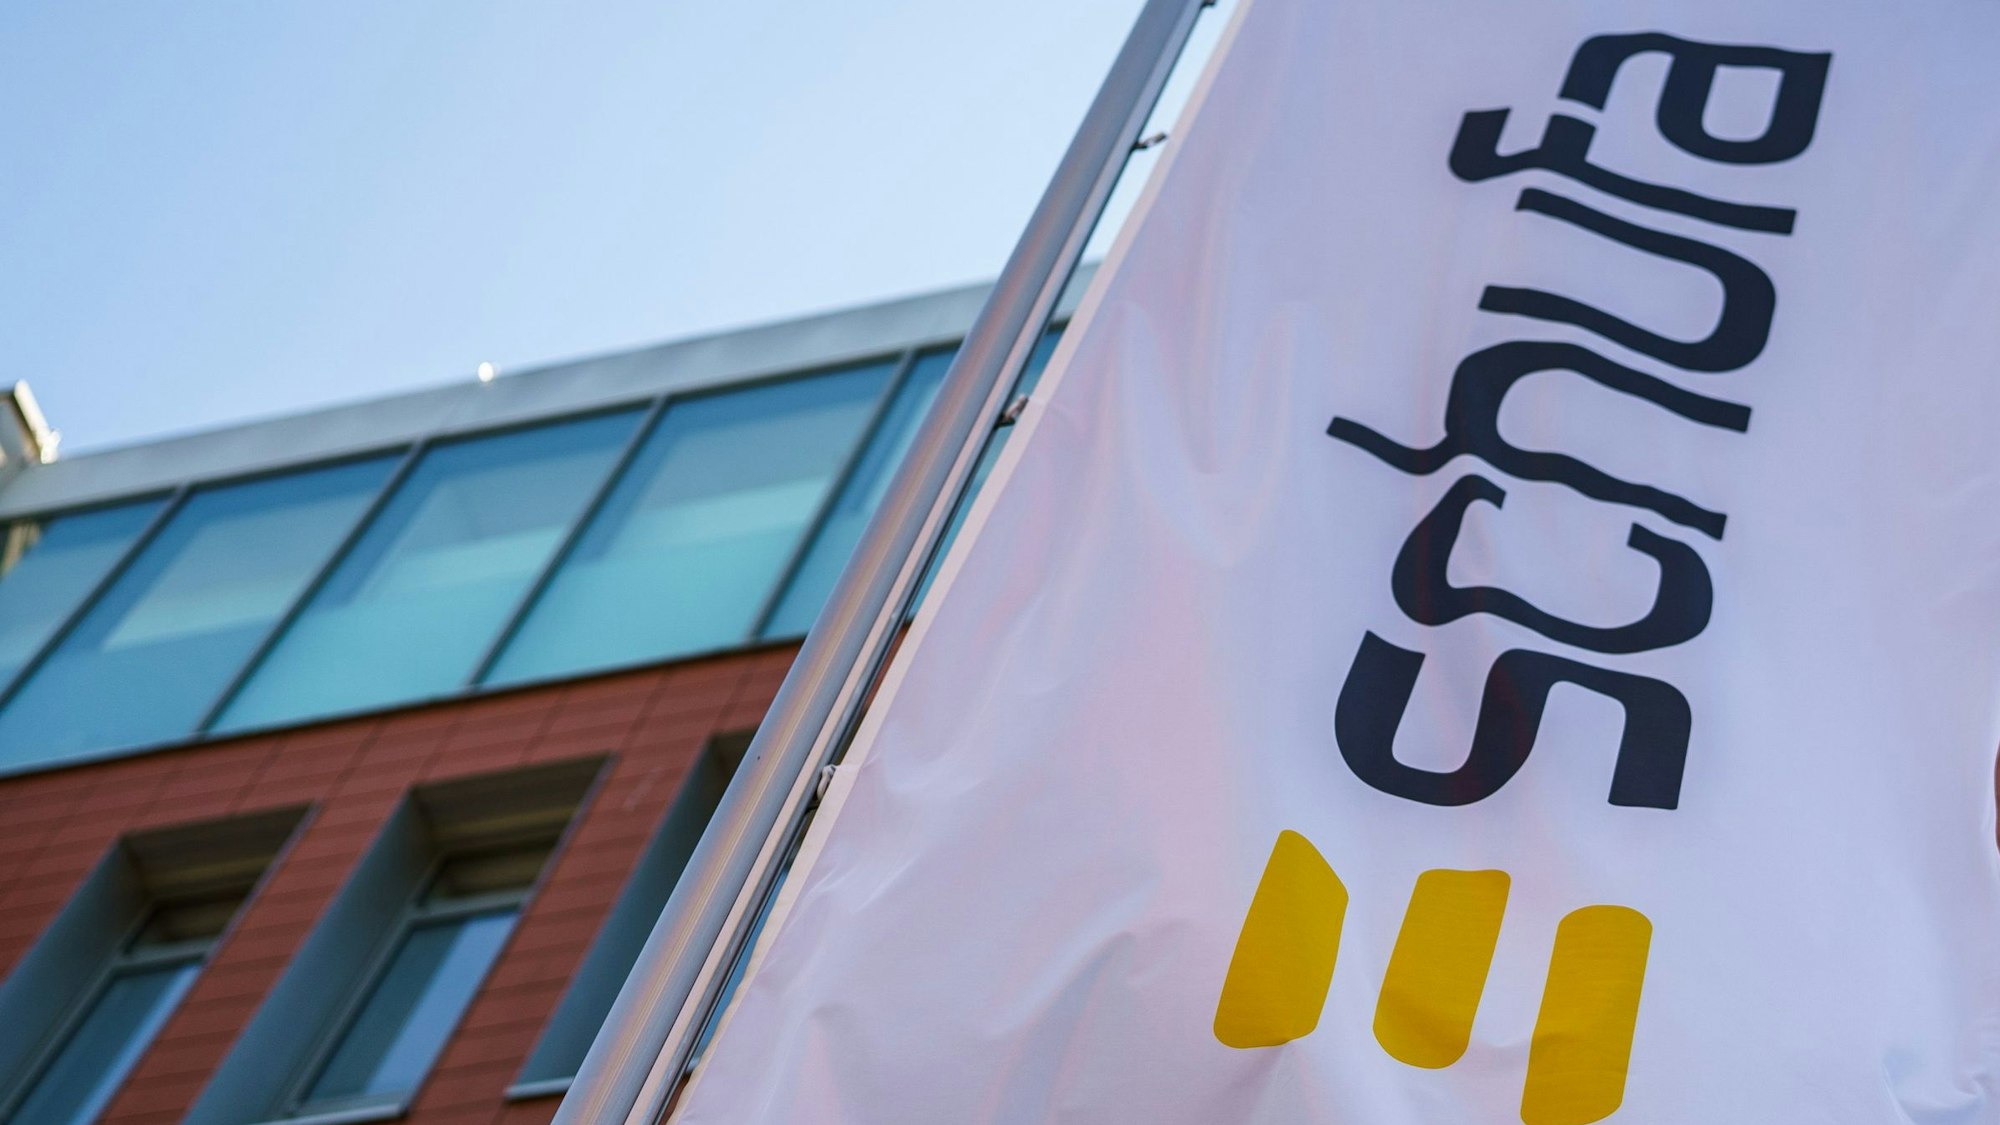 Eine Flagge mit dem Firmenlogo der Schufa, drei breiten gelben Querstreifen, flattert vor dem Geschäftssitz in Wiesbaden.